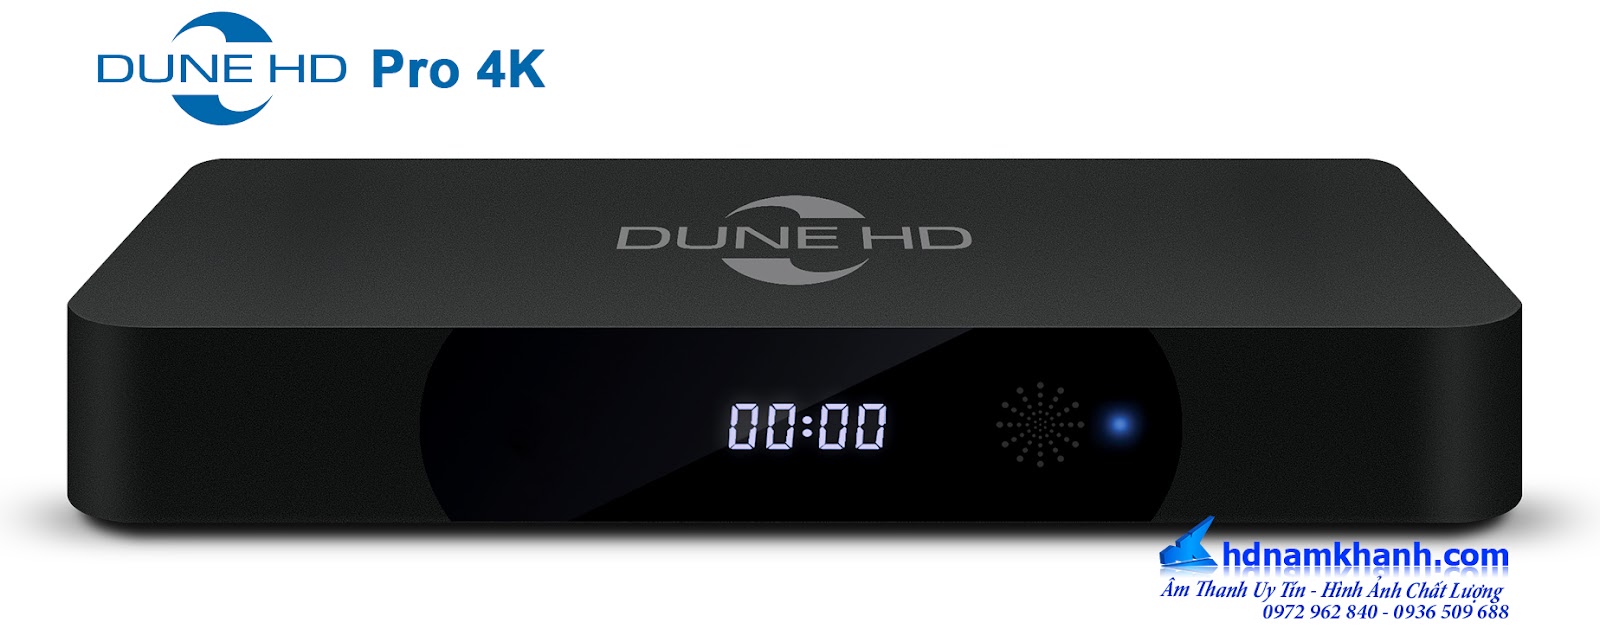 Đầu phát Dune HD Pro 4K, Android Box Himedia Q10 Pro